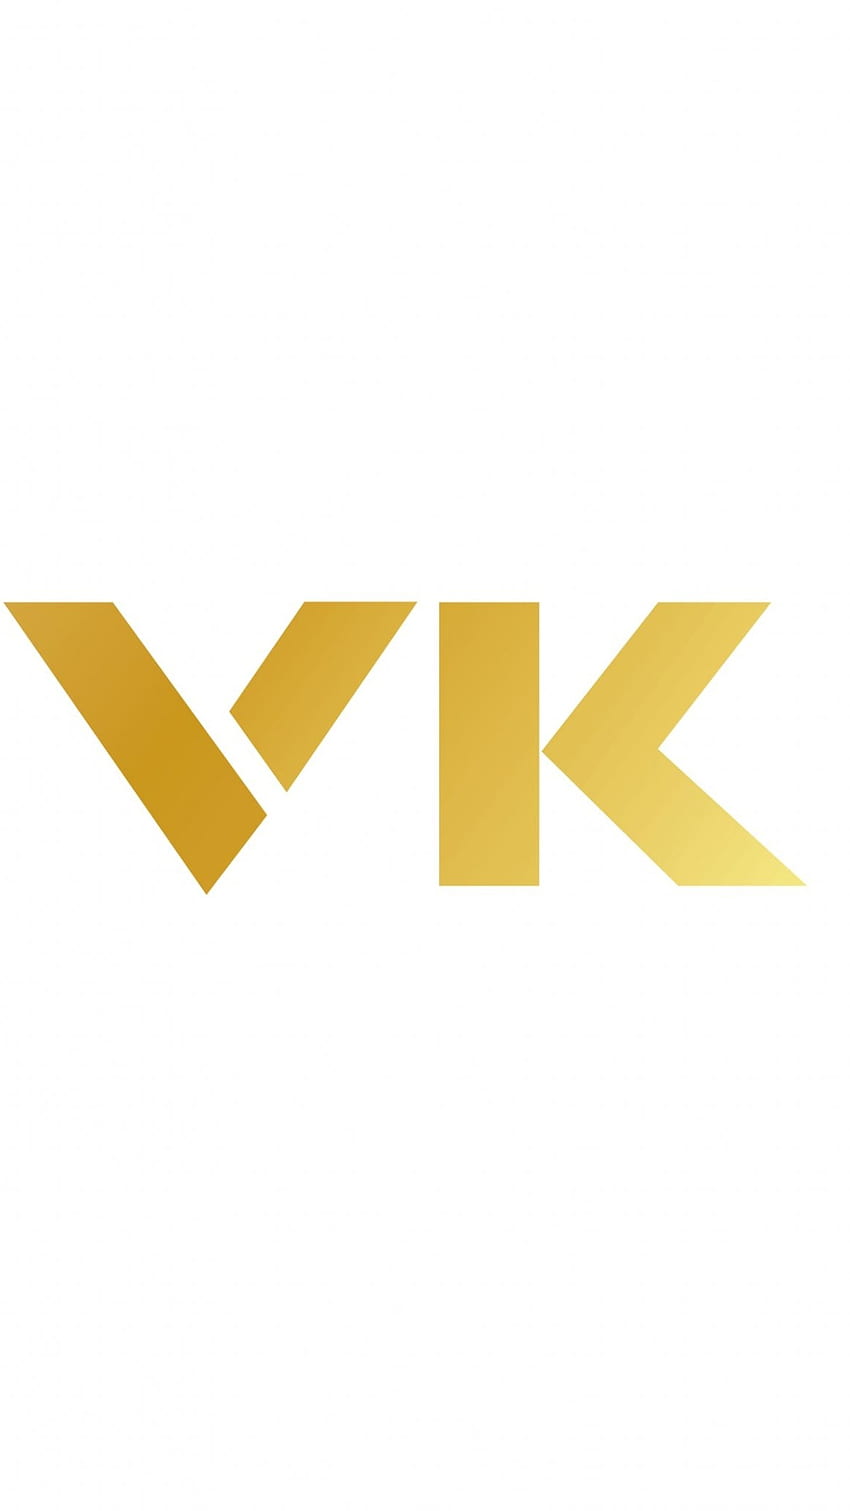 Vk v k letter alphabet logo black white icon Vector Image